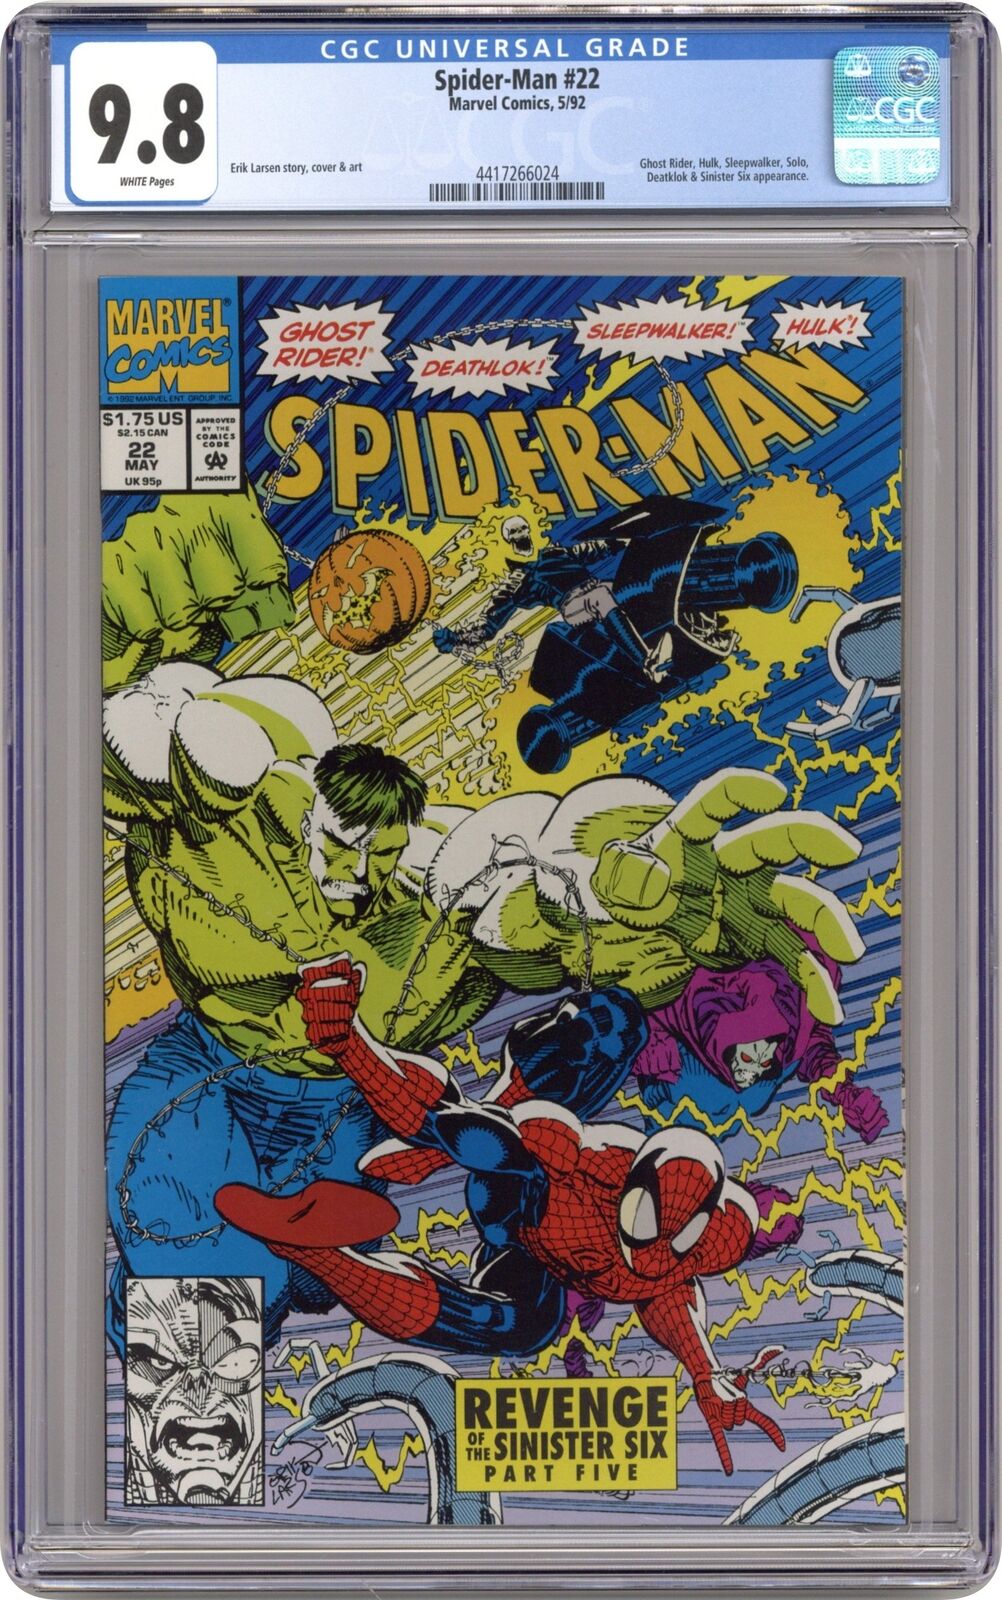 Spider-Man #22D CGC 9.8 1992 4417266024